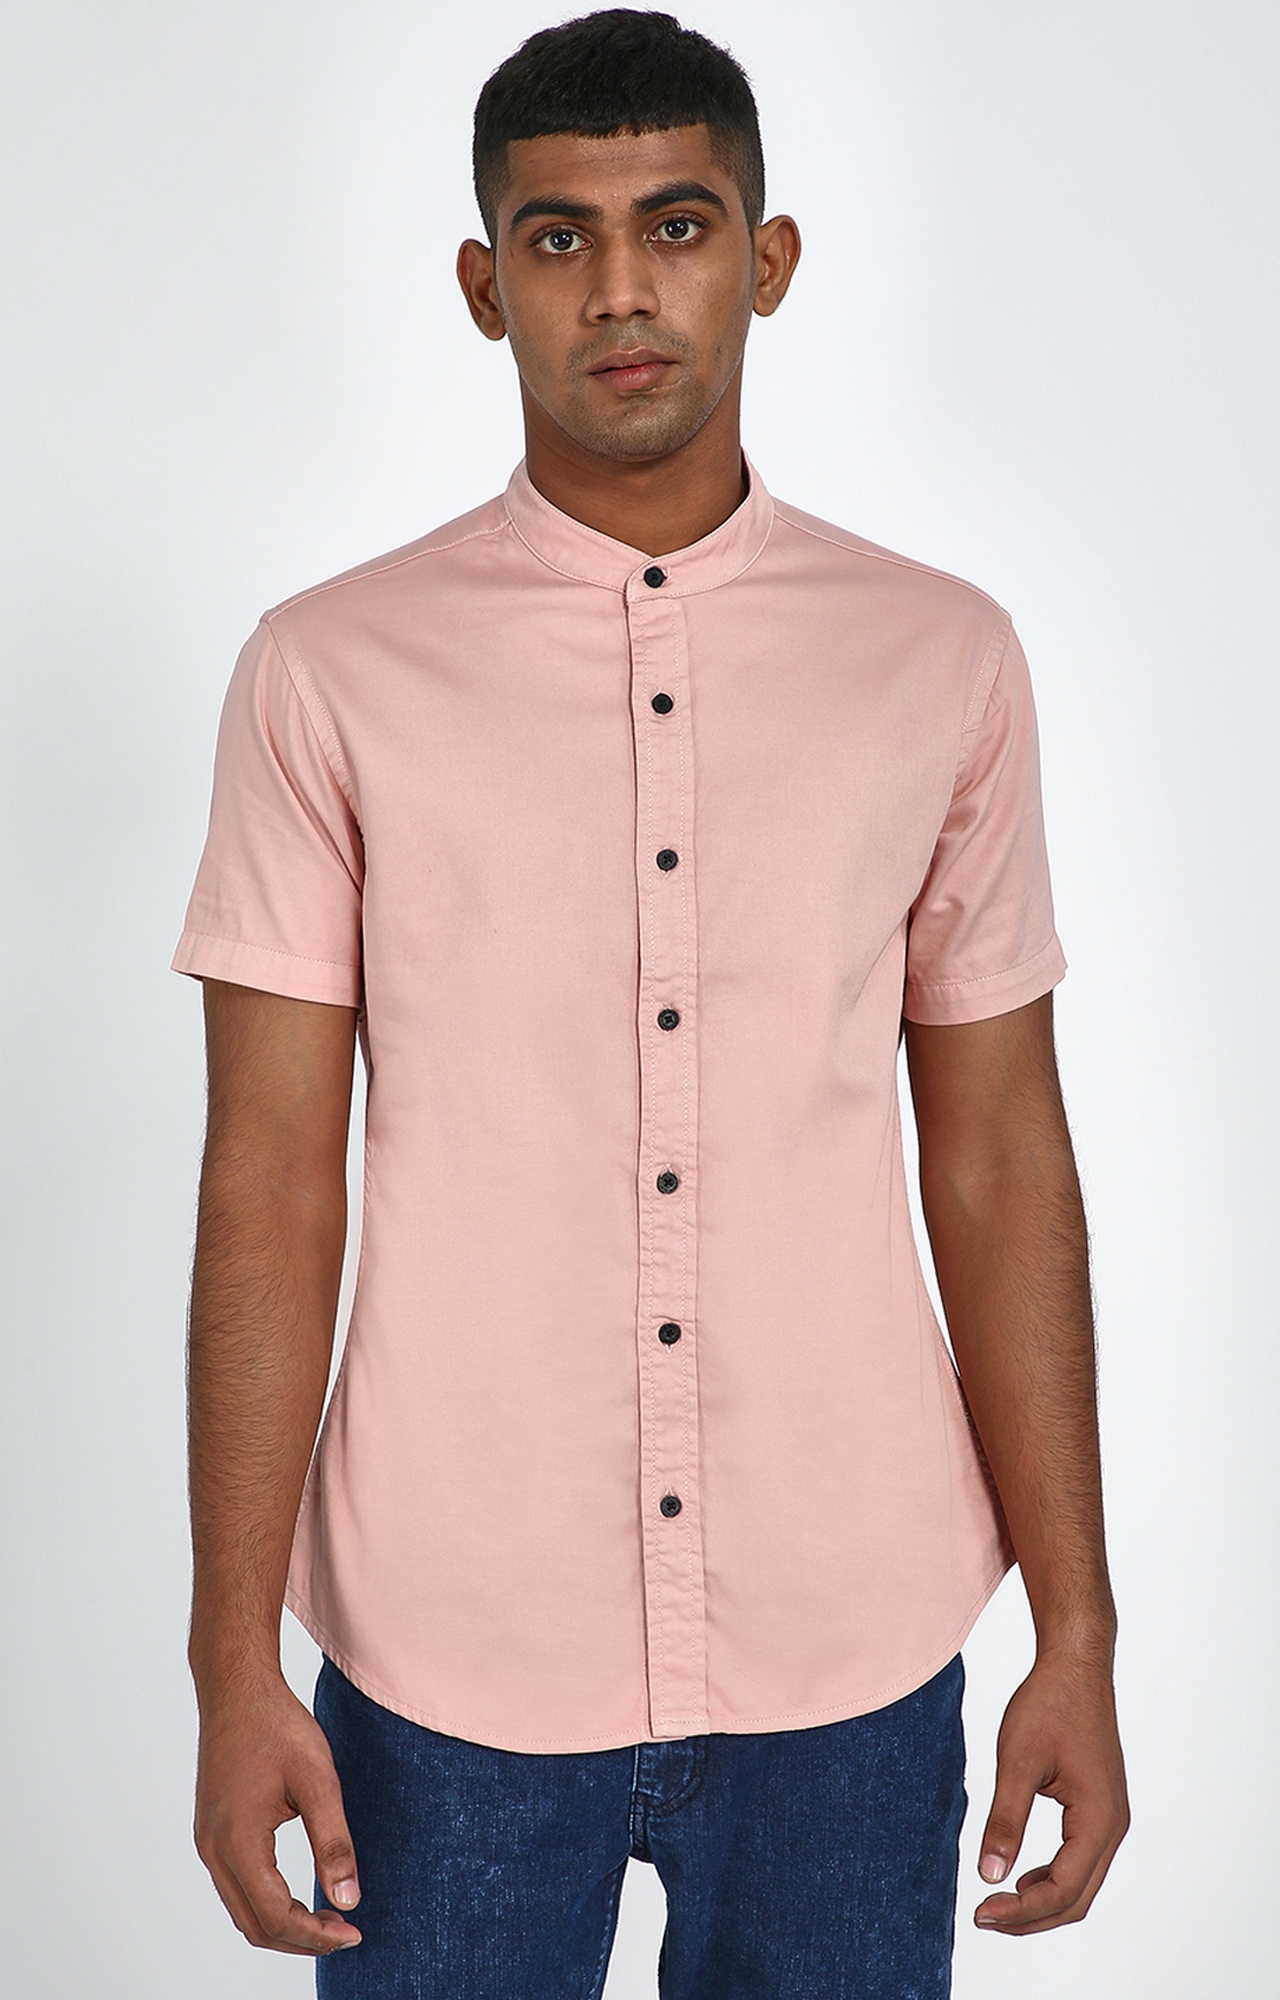 Blue Saint | Blue Saint Men's Pink Slim Fit Shirts